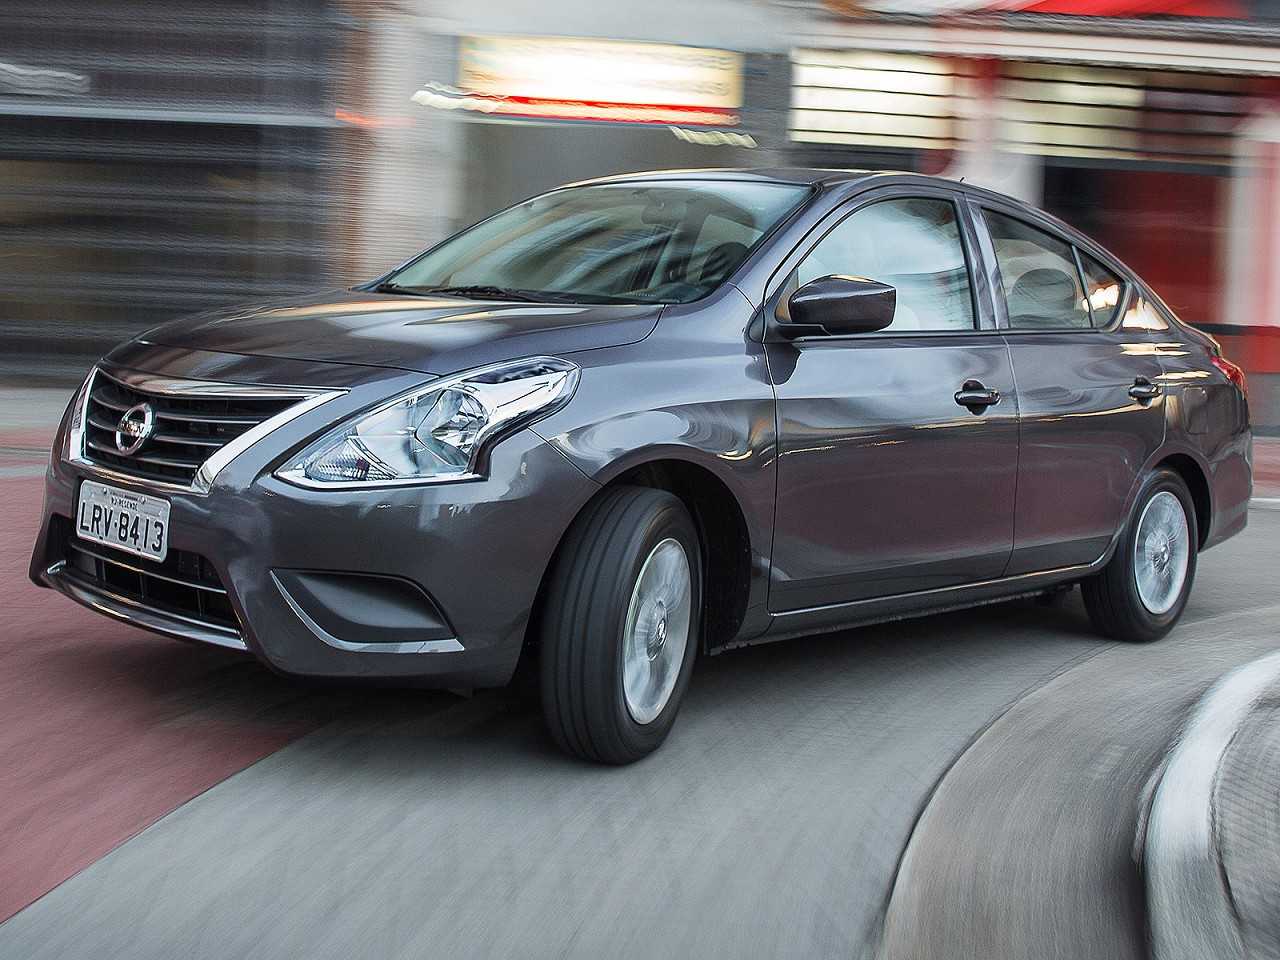 Nissan Versa precisa de uma renovao para se manter vivo em um segmento relevante no mercado